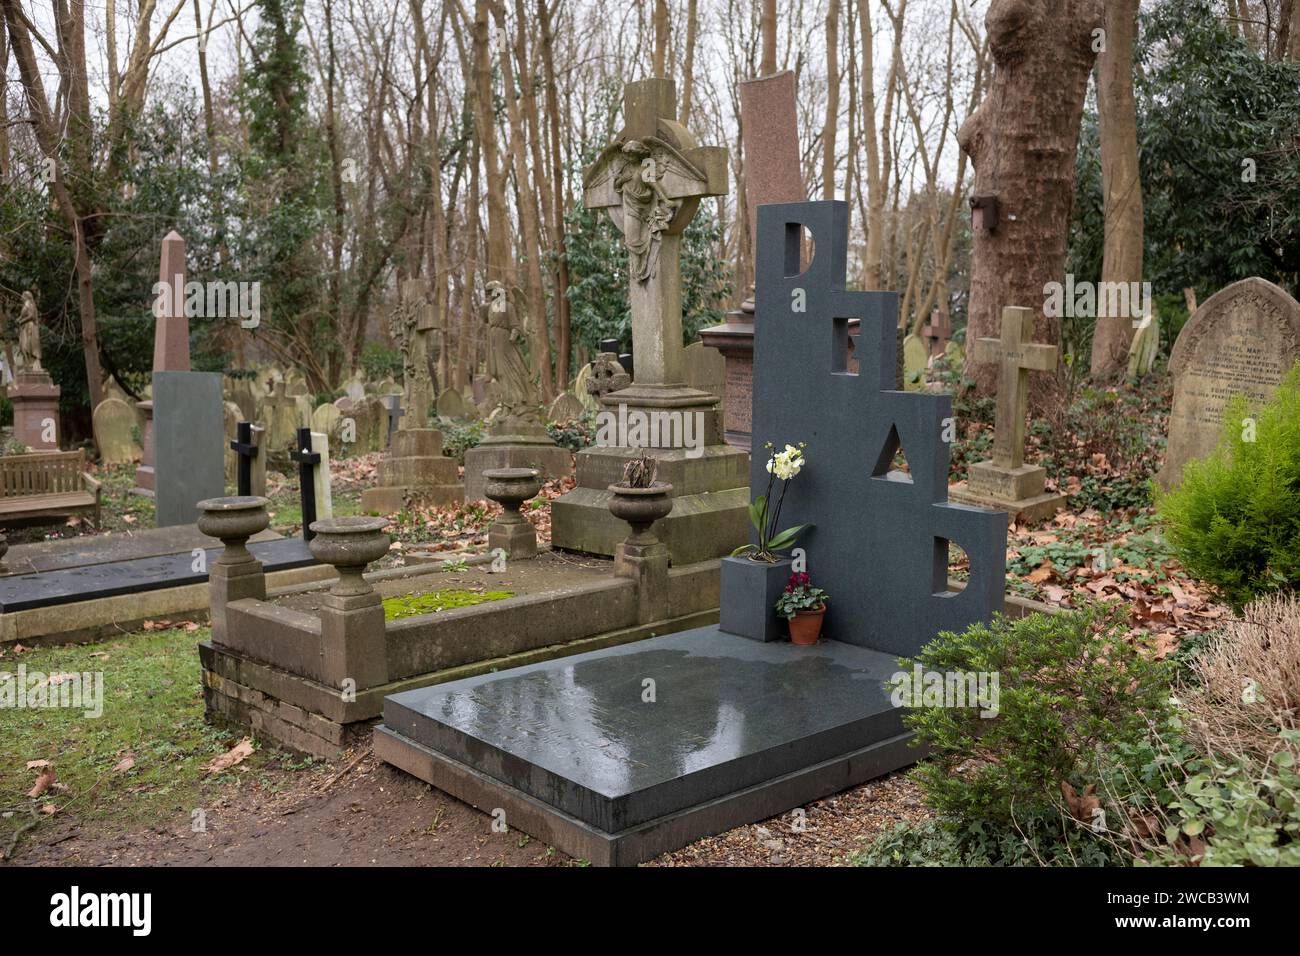 Patrick Caulfield Gravestone, cimetière de Highgate, cimetière nord de Londres, obtient un financement de 100 000 000 £ de la loterie nationale pour aider à des rénovations, Angleterre Royaume-Uni Banque D'Images